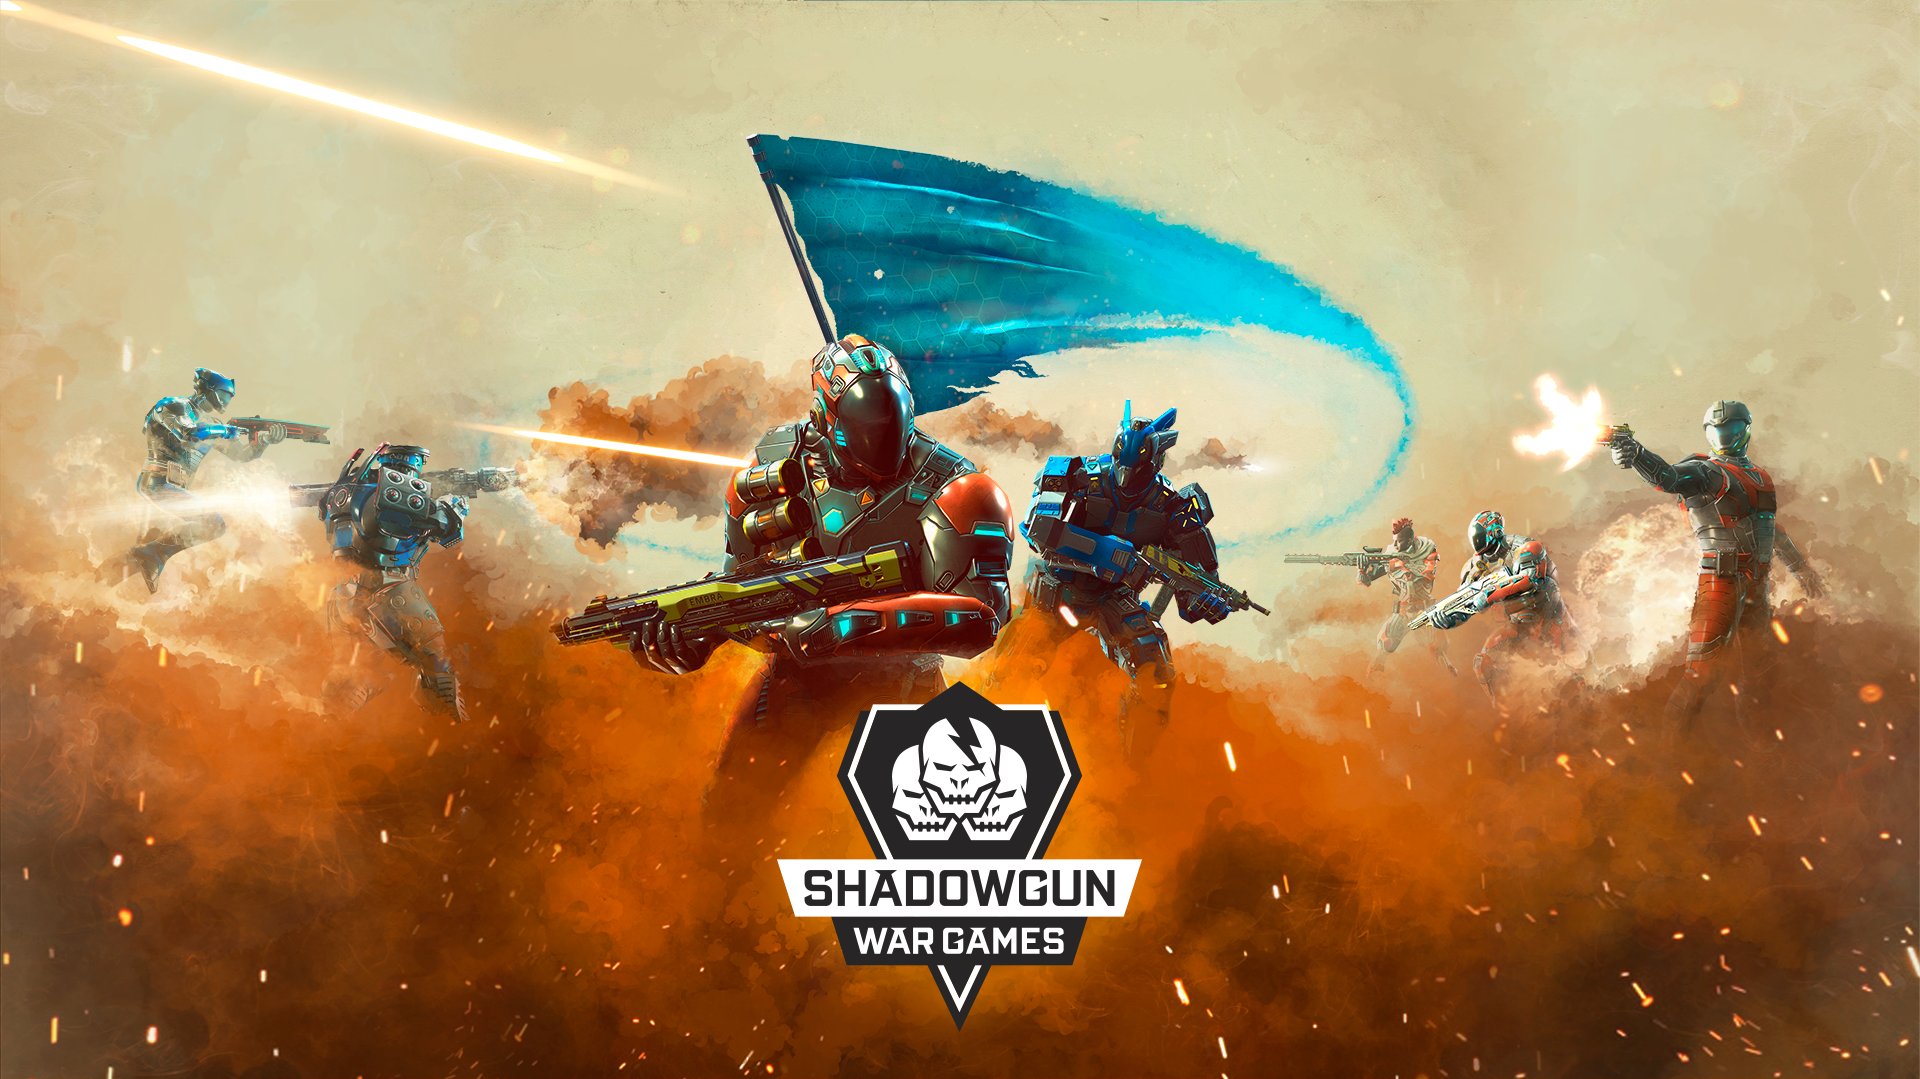 shadowgun war games heroes